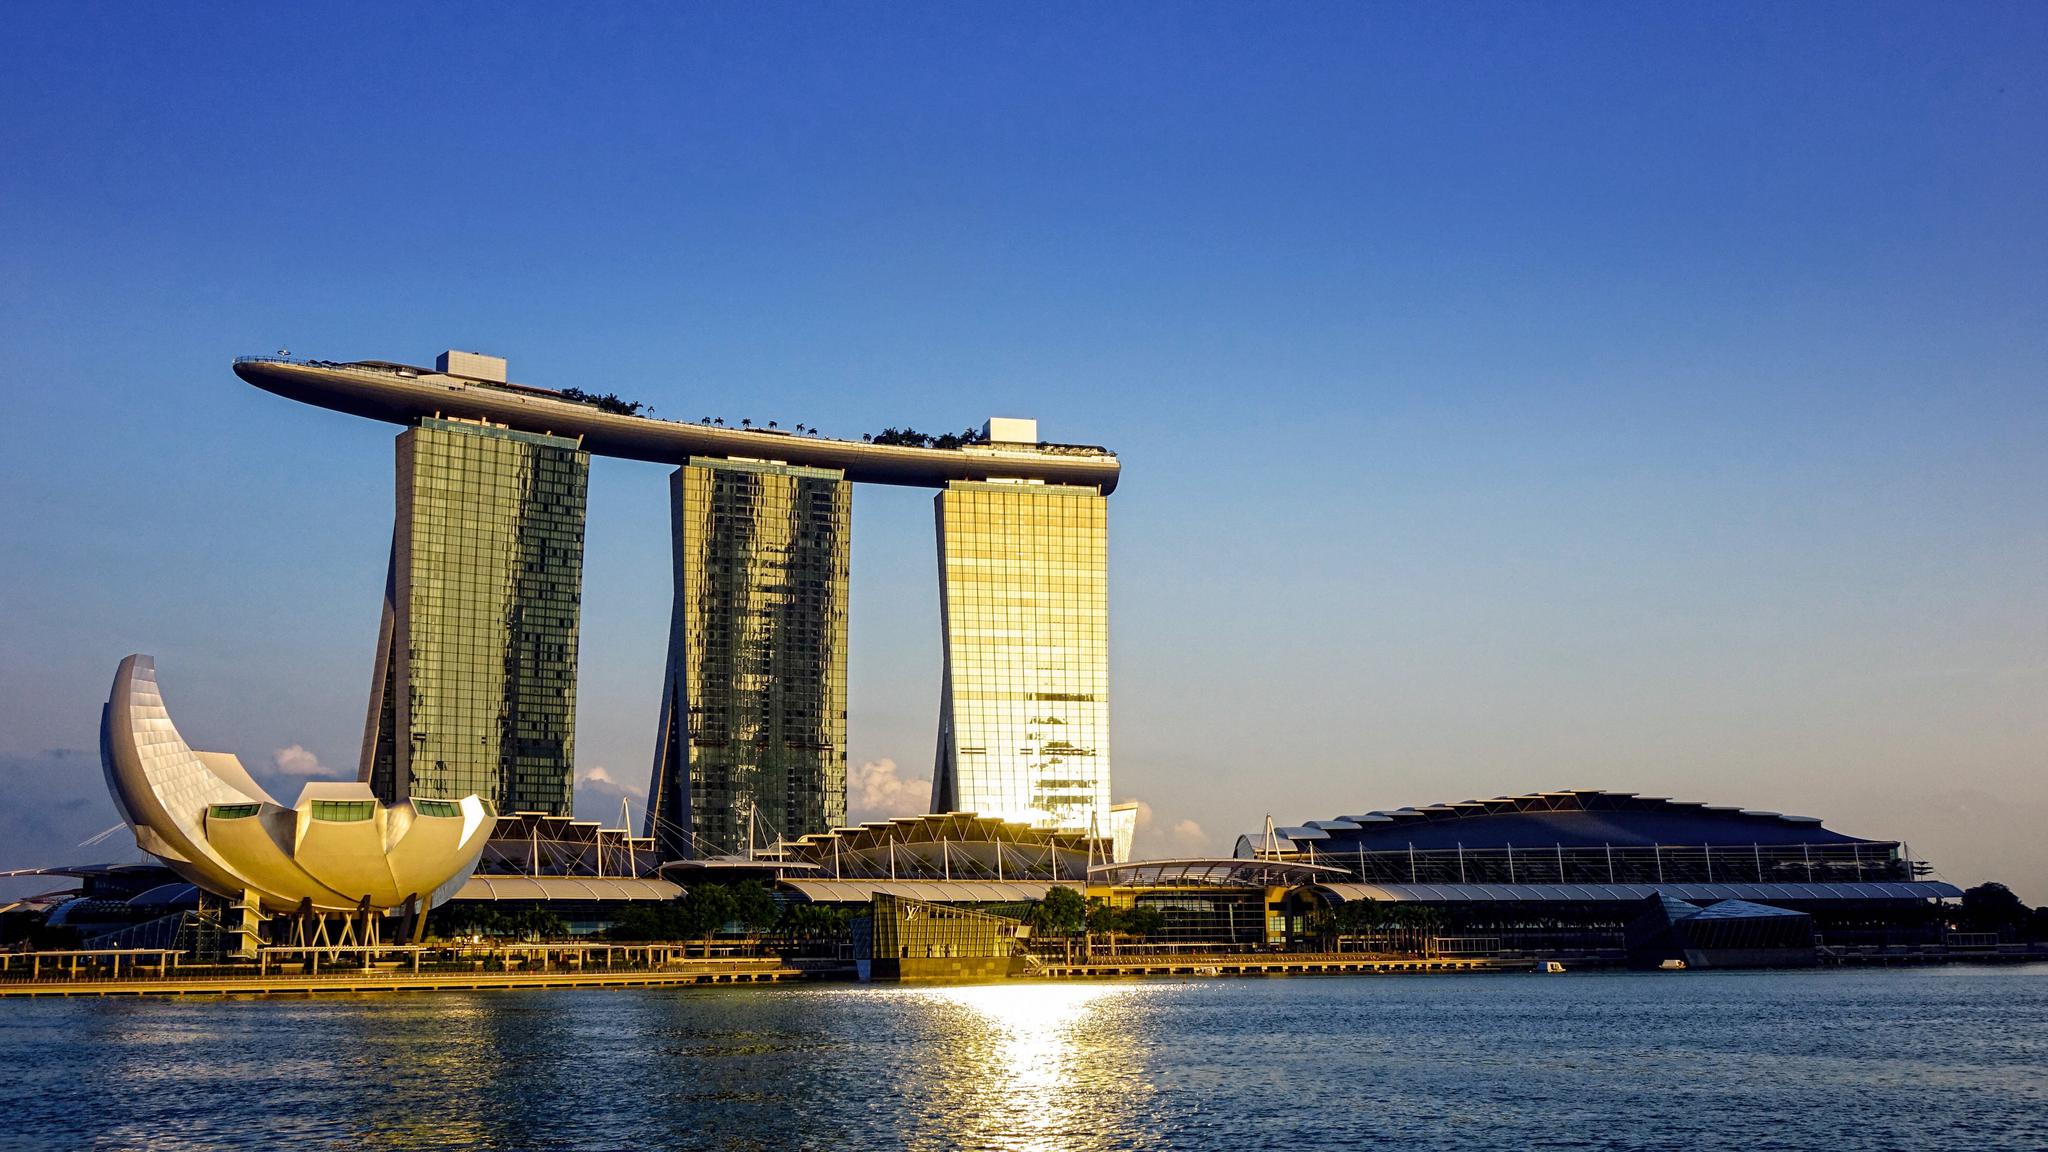 全球最美50大建筑揭晓,新加坡滨海湾金沙酒店荣获第二